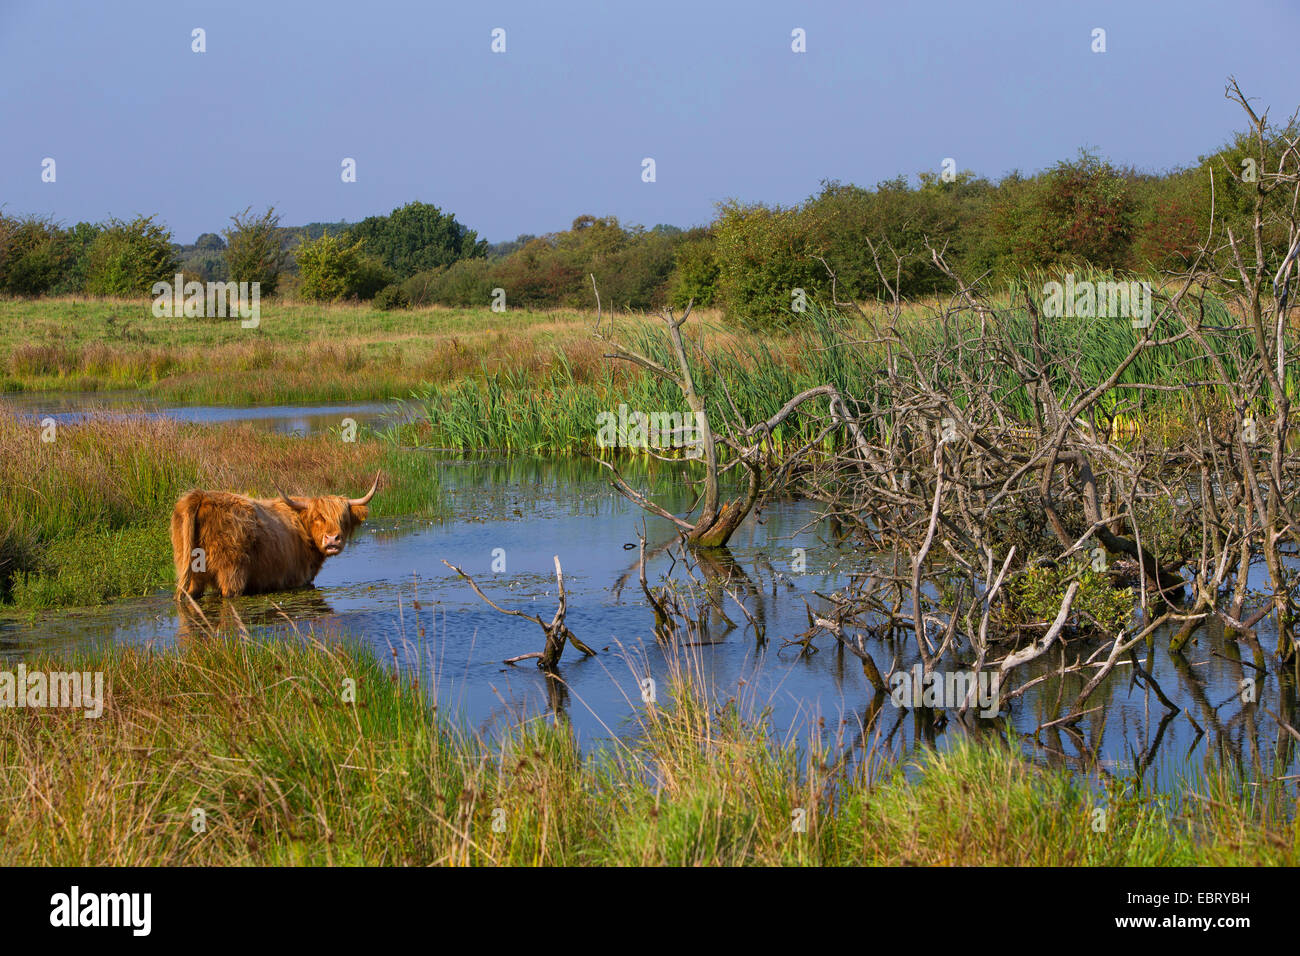 Scottish Highland ganado (Bos primigenius f. taurus), de pie en un estanque, Alemania, Schleswig-Holstein Foto de stock